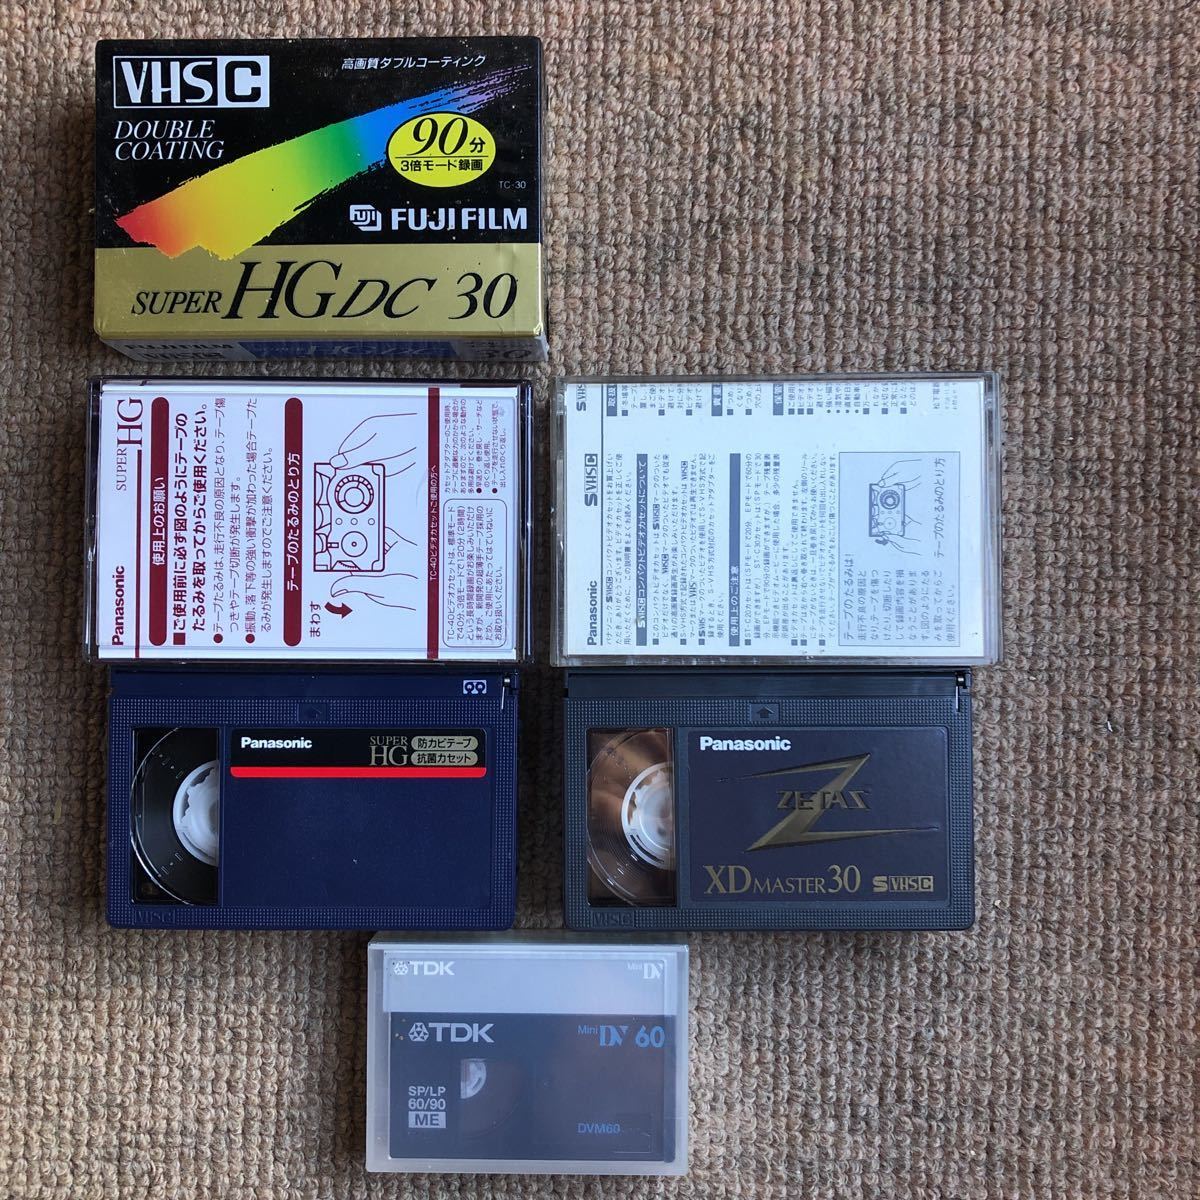  старый  видео-камера     лента   VHS C( не вскрытый ...30...  .  открытие упаковки  40...?) SVHS C открытие упаковки  30...  . Mini DV60(TDK нераспечатанный ) . VHS-C адаптер 